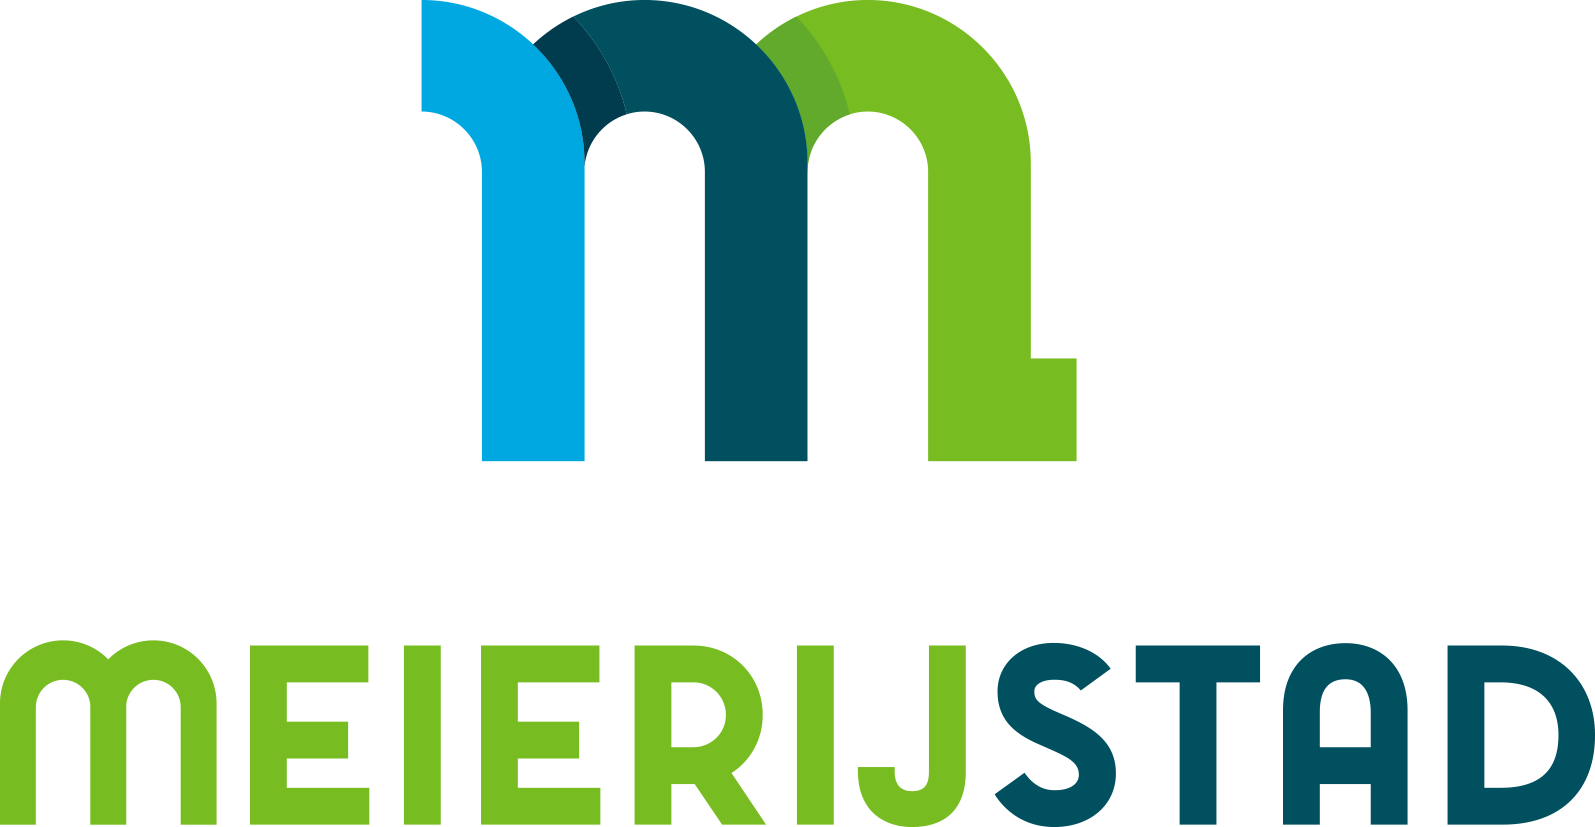 Logo van gemeente Meierijstad